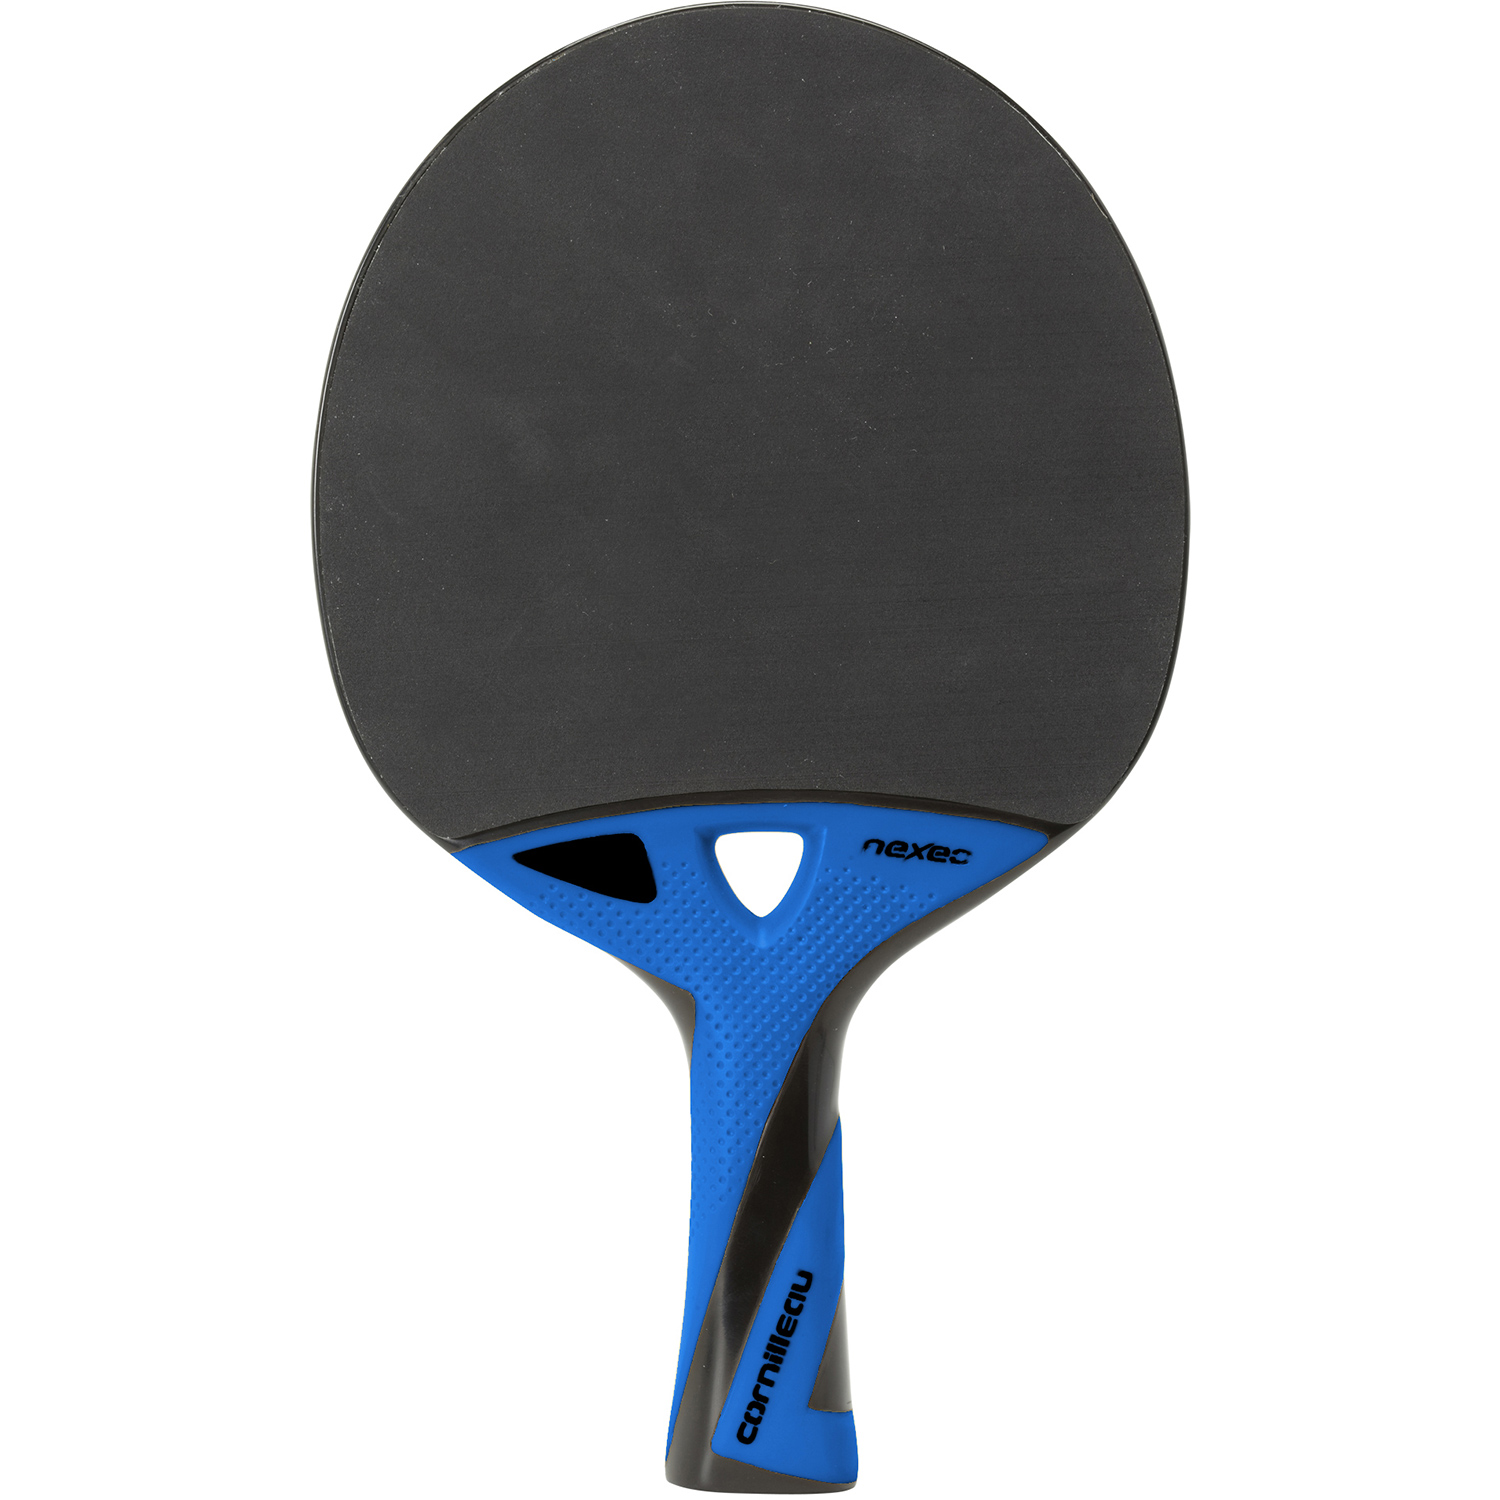 Pala Ping Pong Bandito Sport Eco-Star 4105.01 - AliExpress